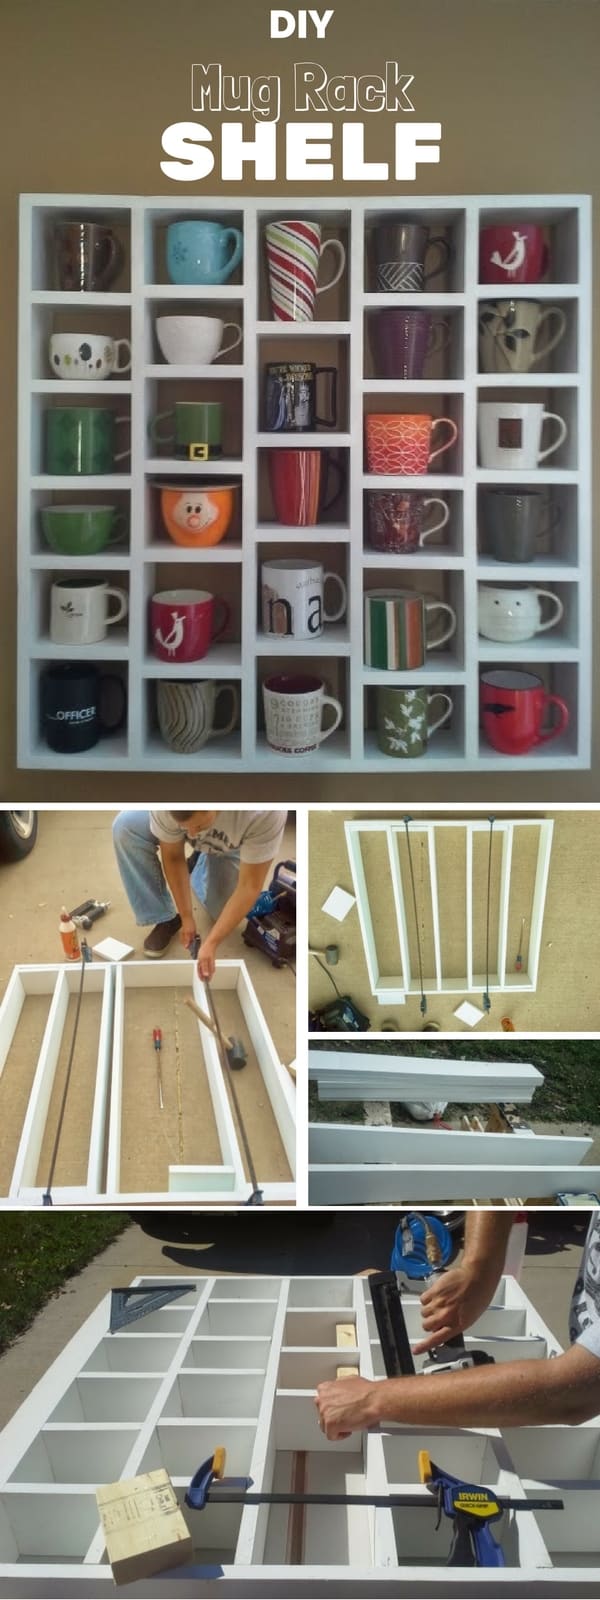 mug-rack-shelf